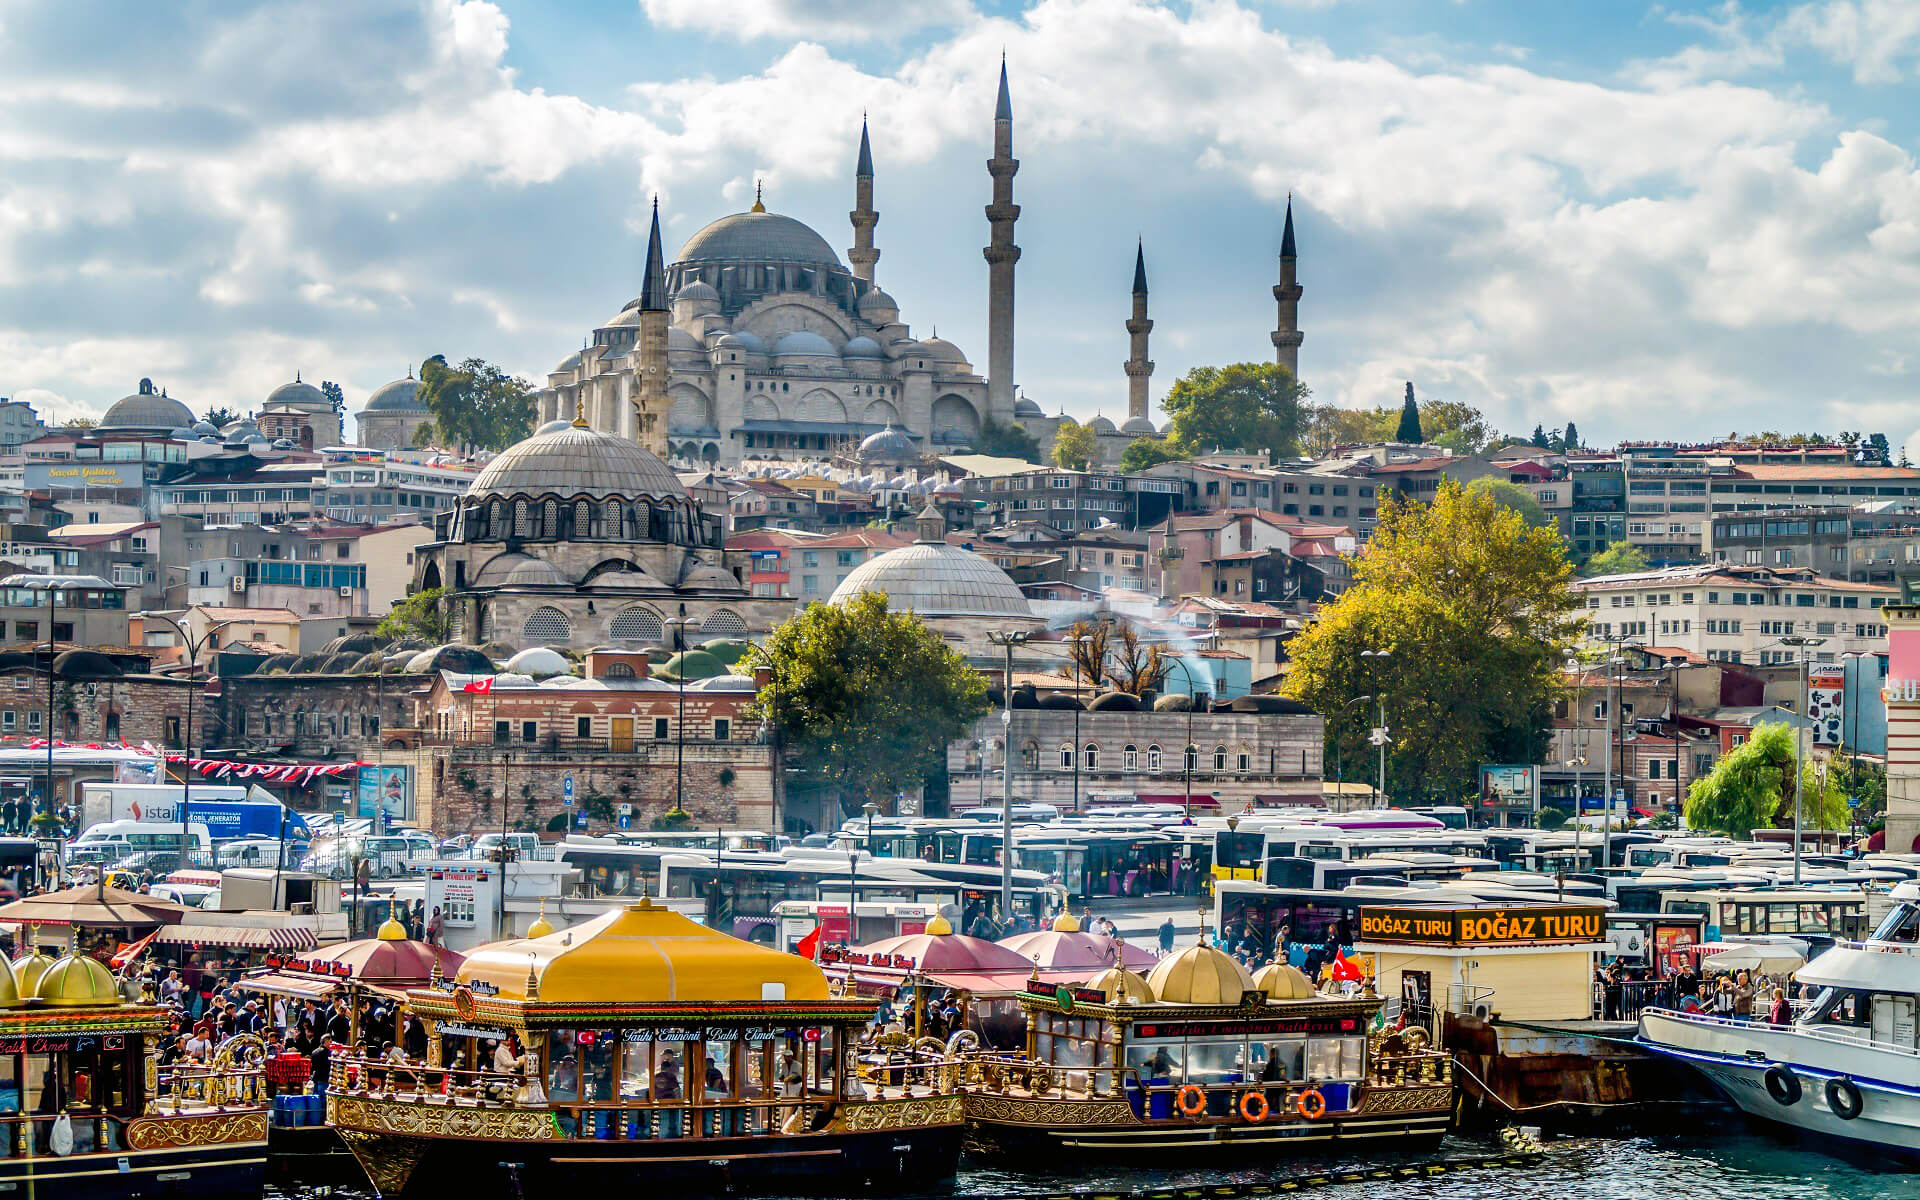 Panduan Perjalanan Istanbul - Pembantu Perjalanan S